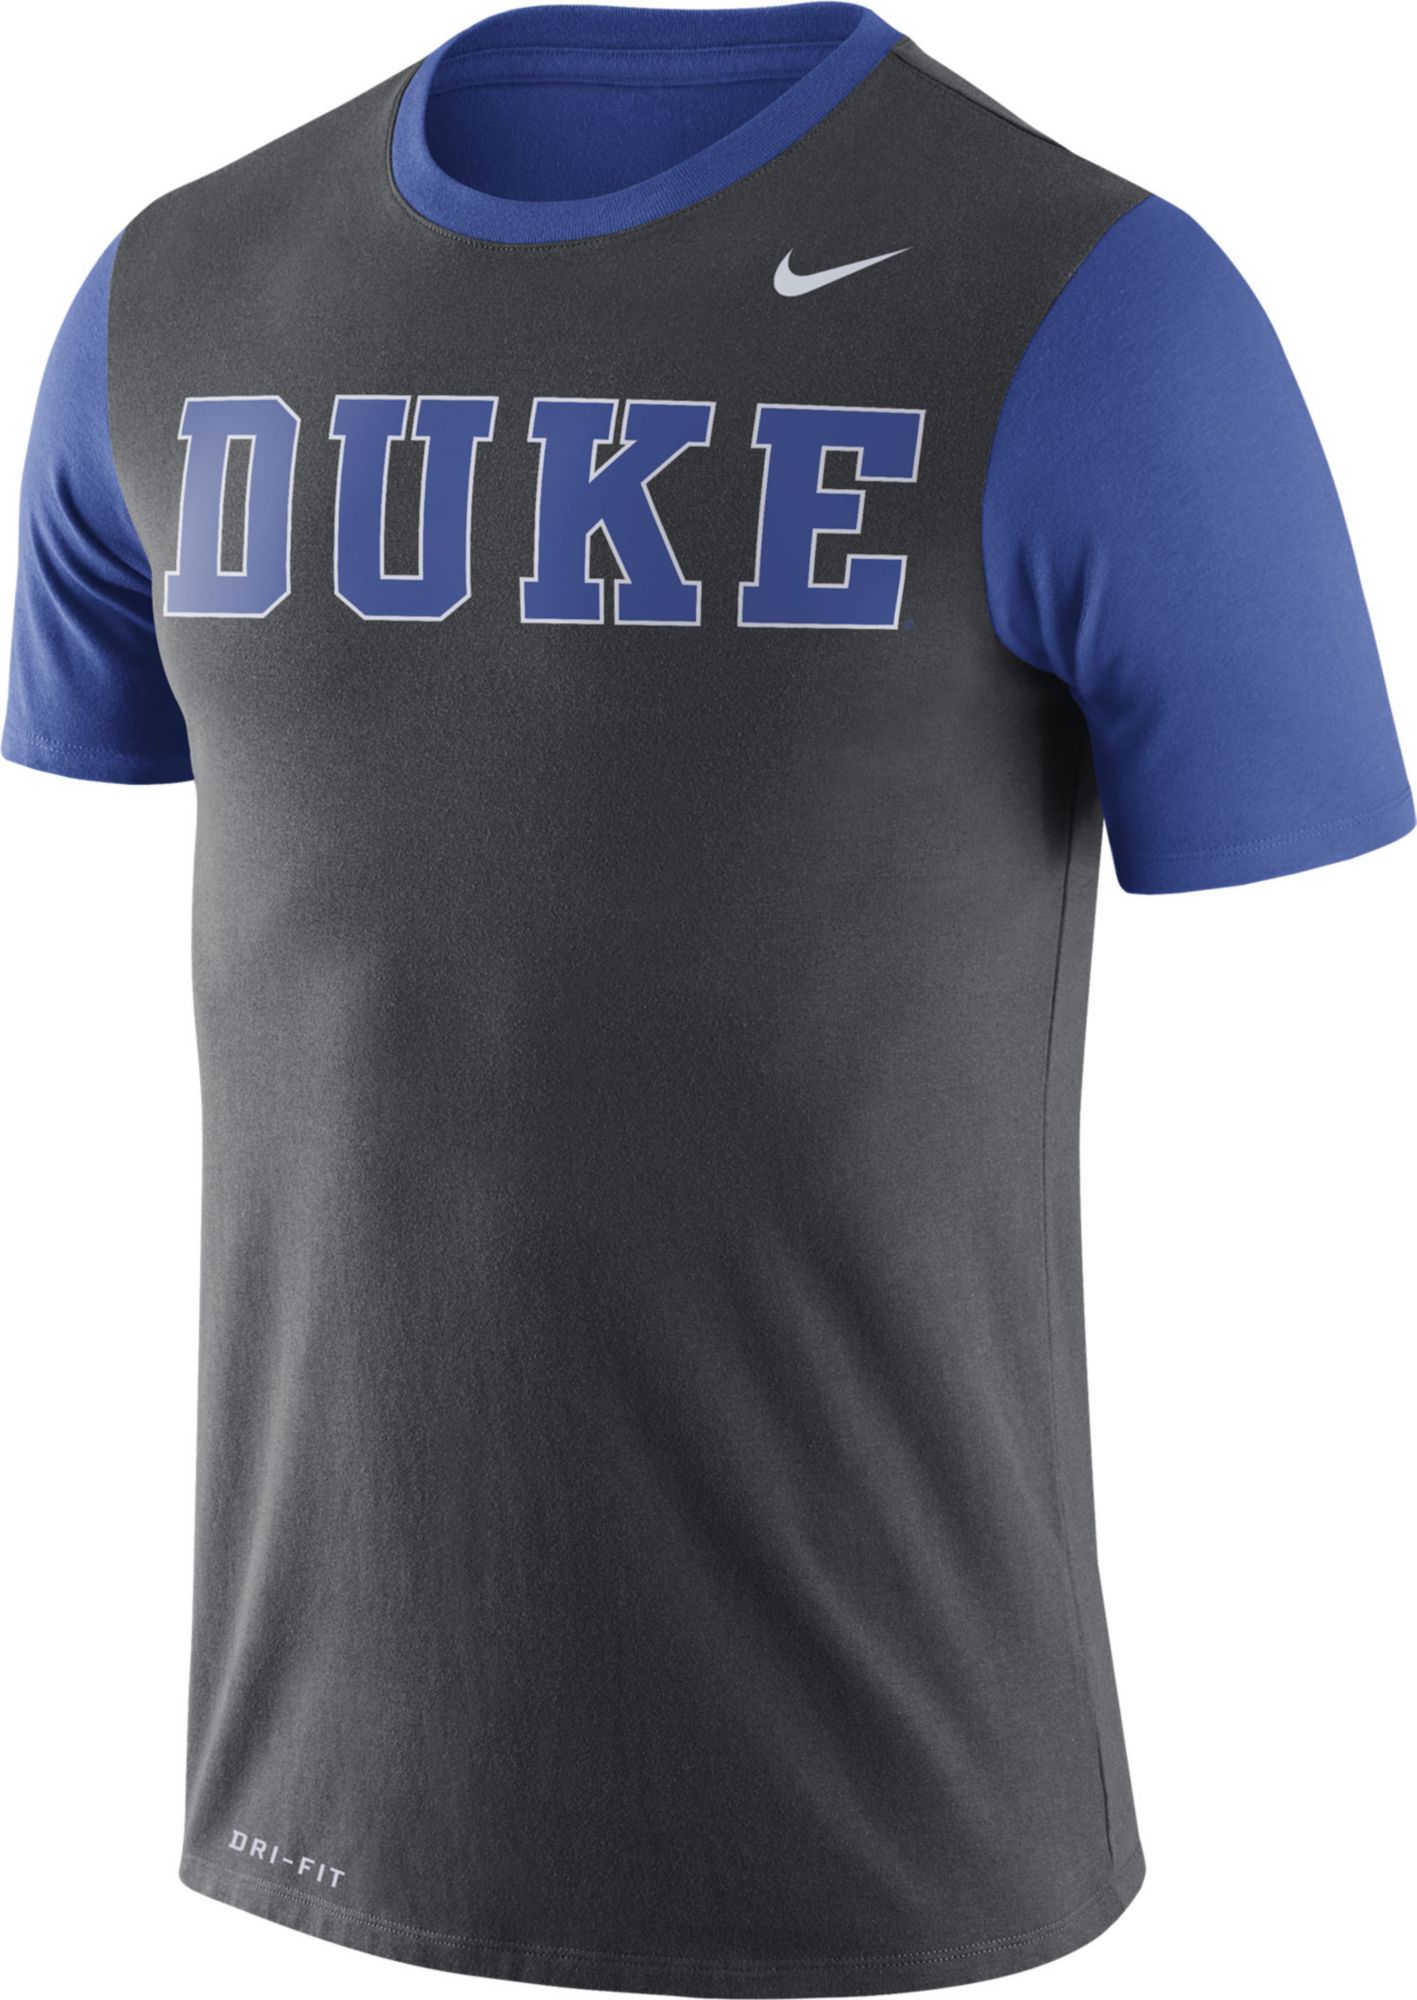 Duke Blue Devils Men's Apparel | DICK'S Sporting Goods